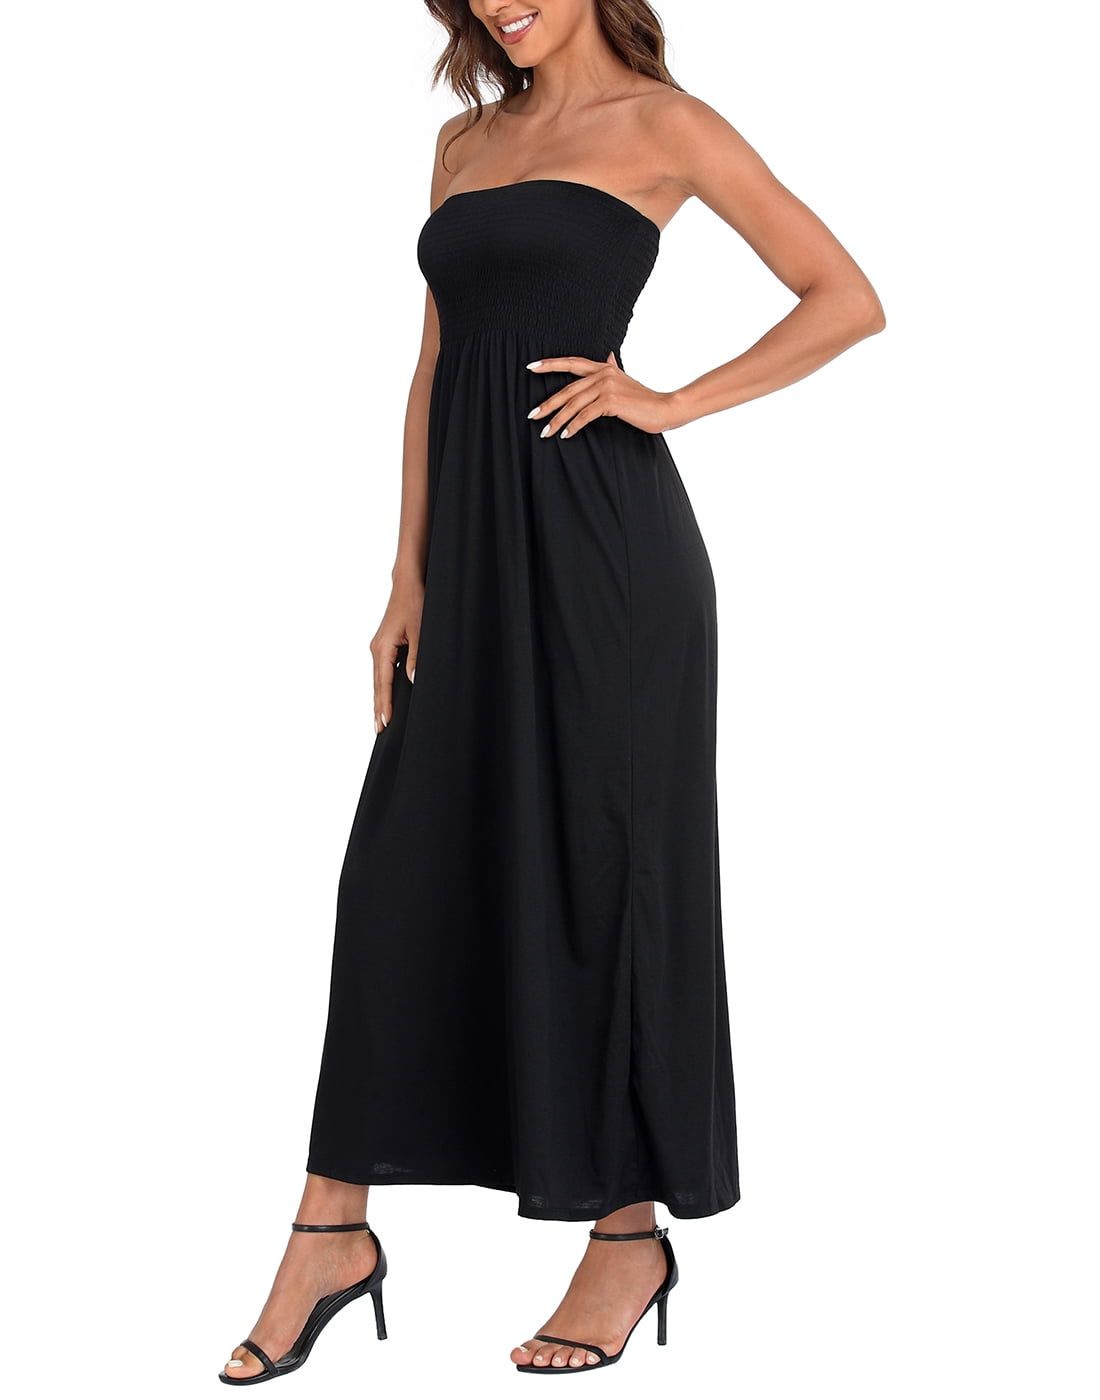 Urbanic Women Tube Black Dress - Buy Urbanic Women Tube Black Dress Online  at Best Prices in India | Flipkart.com